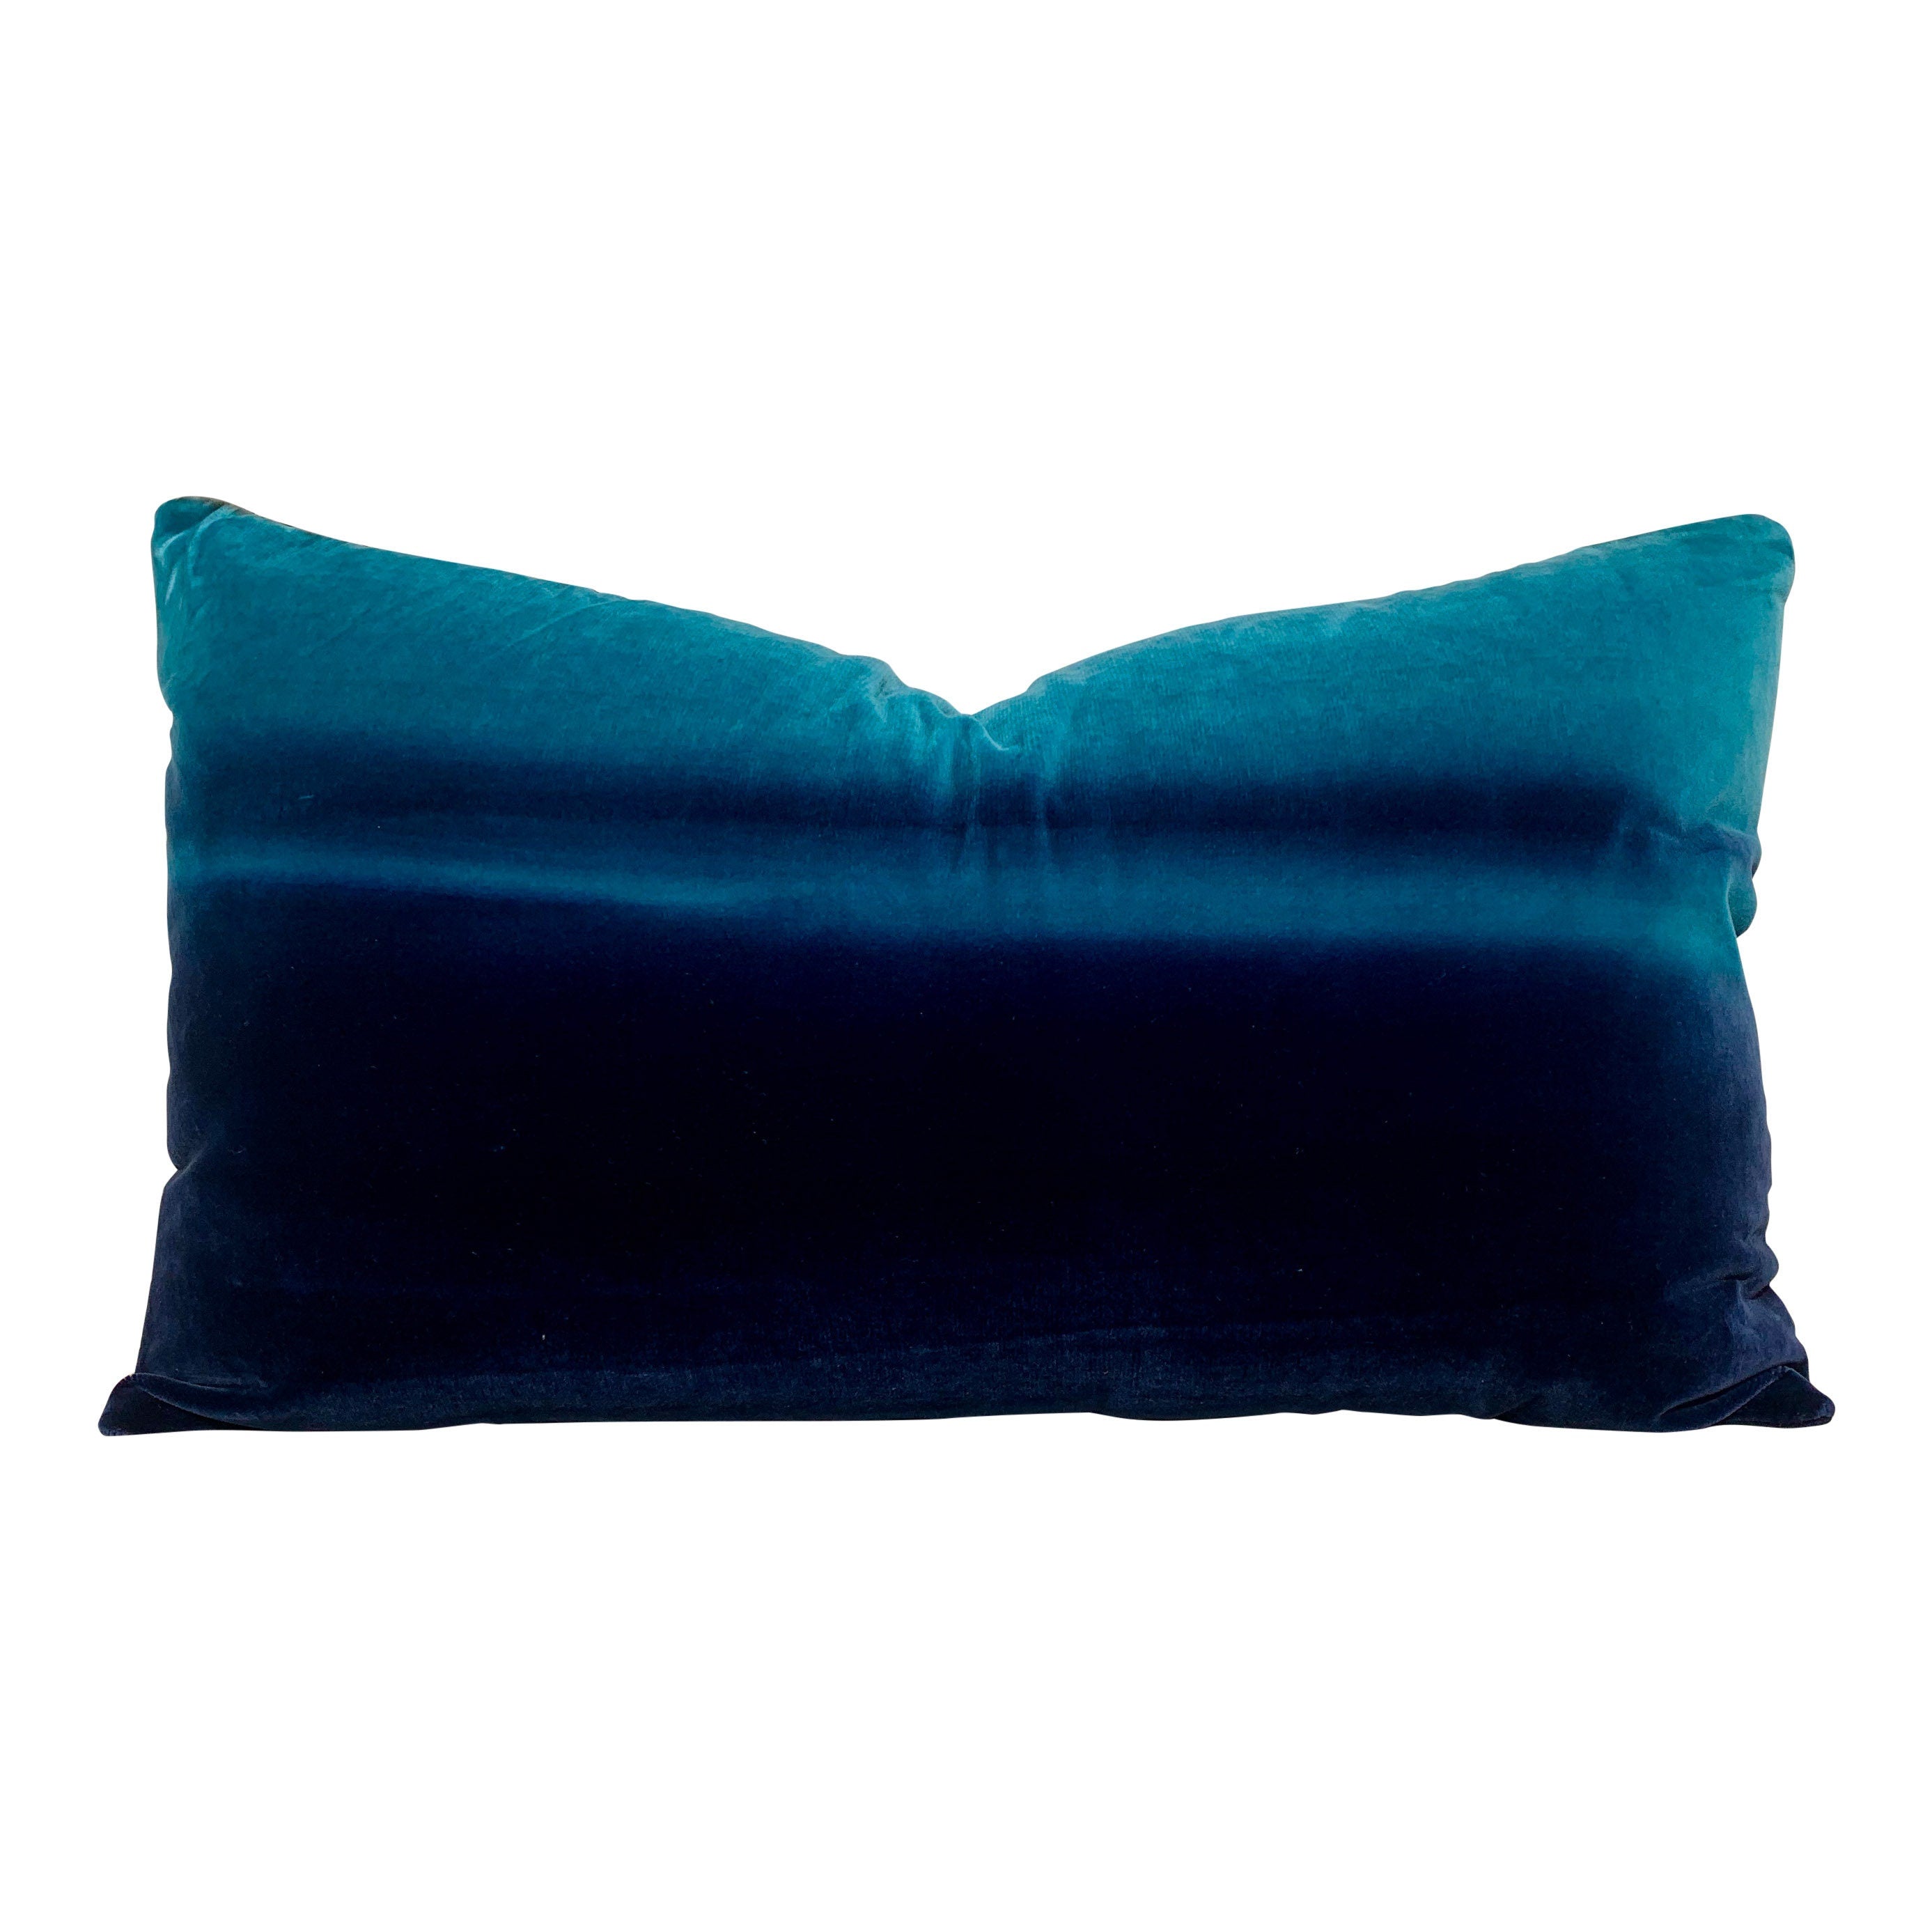 Harlequin Designer Ombre Velvet Pillow in Blueberry, Blue lagoon